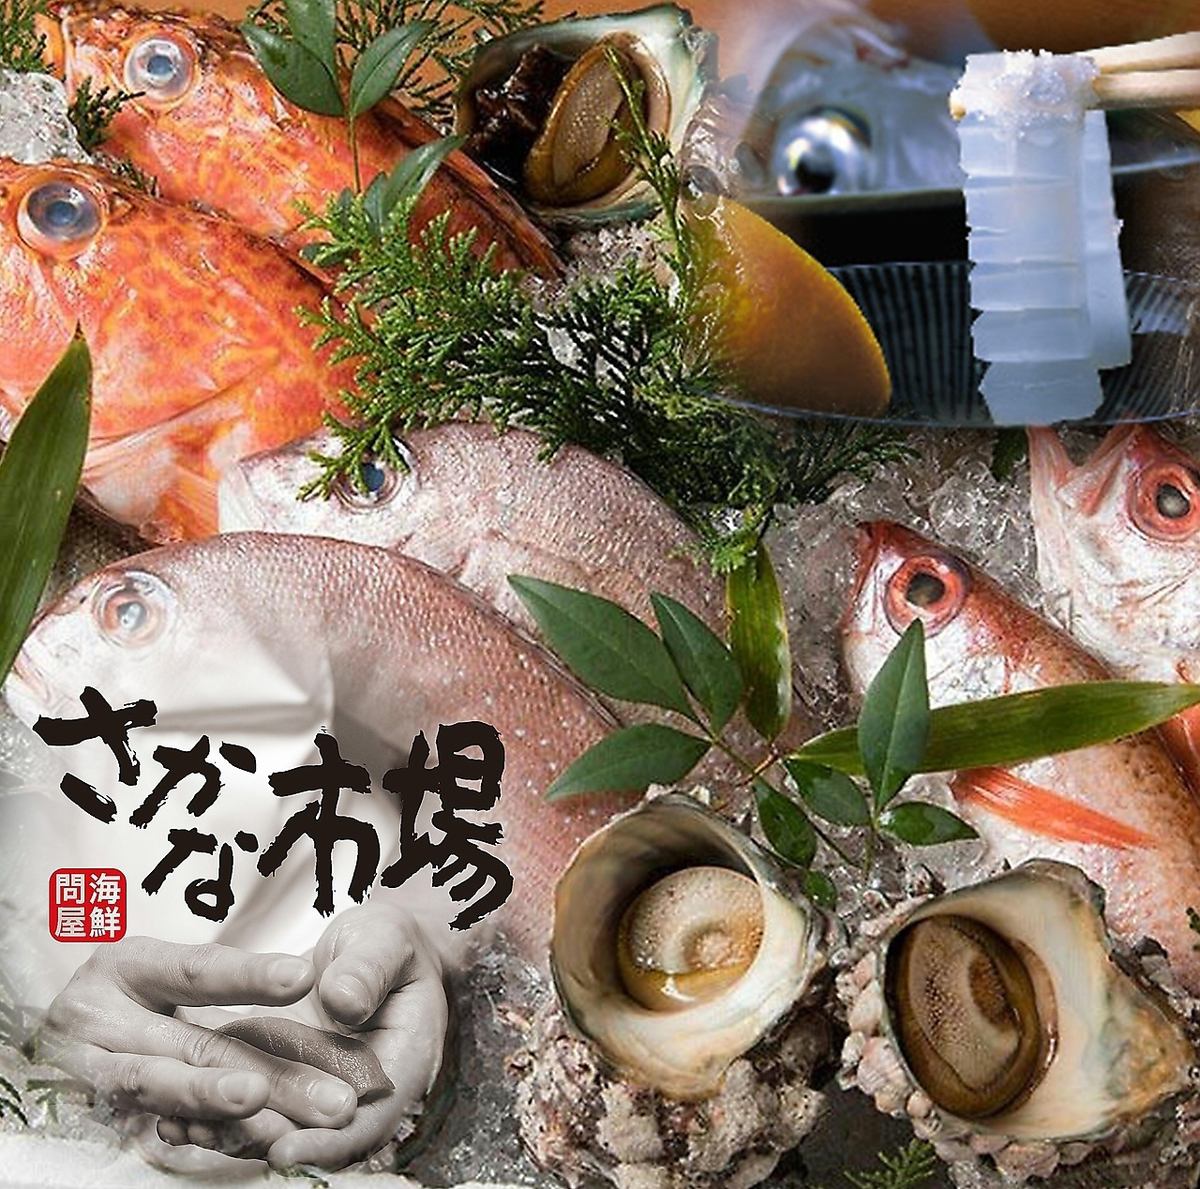 鱼市特产“鱿鱼的生鱼片”等美味鱼的价格实惠